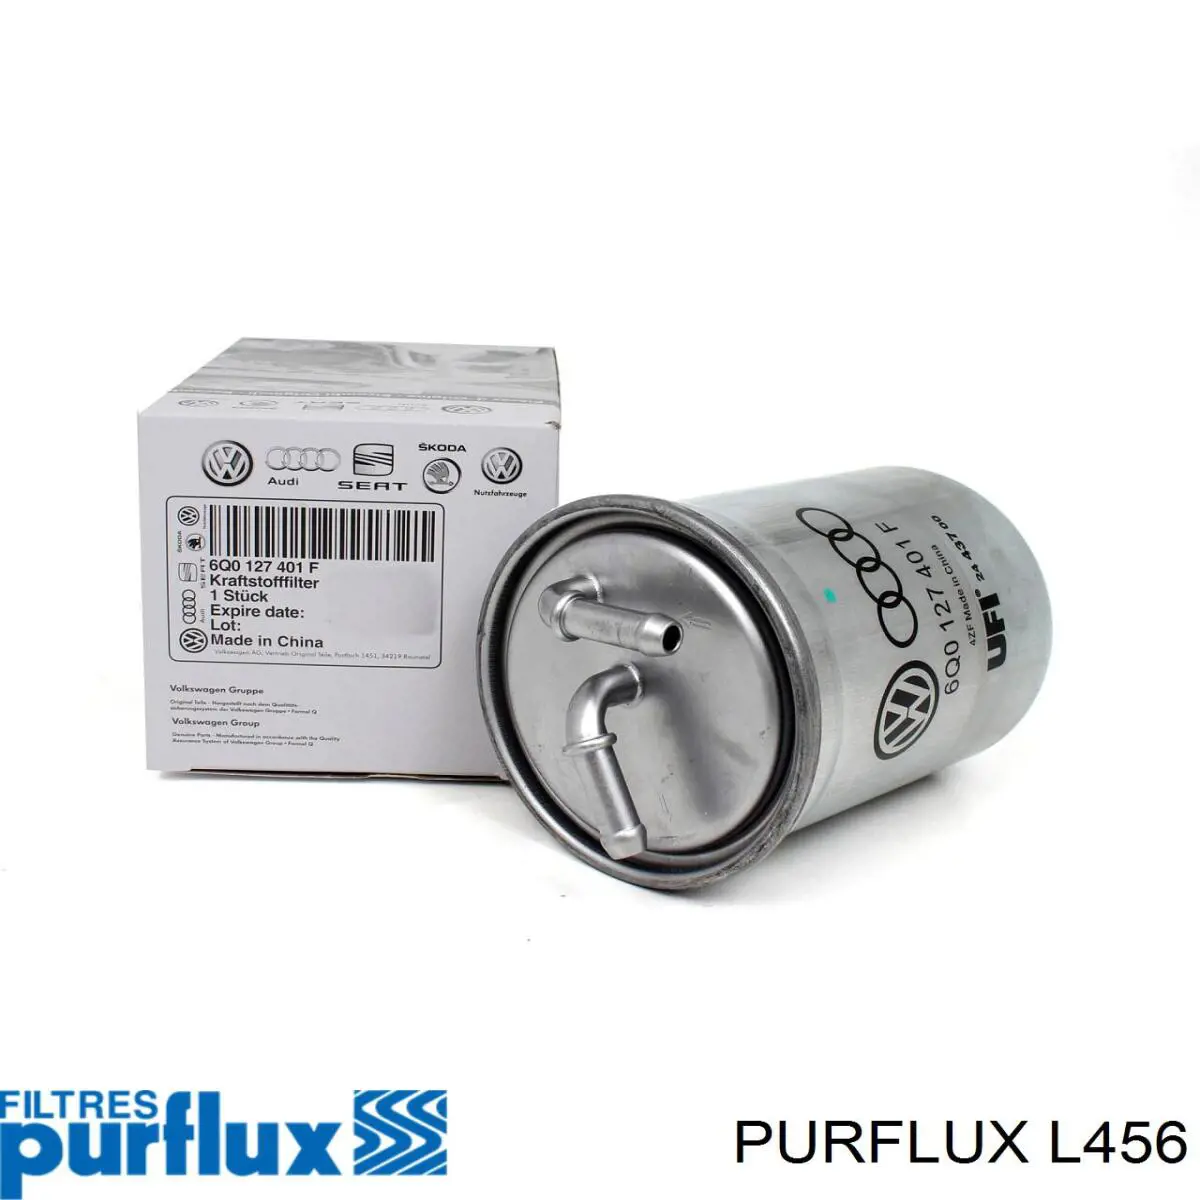 L456 Purflux filtro de aceite